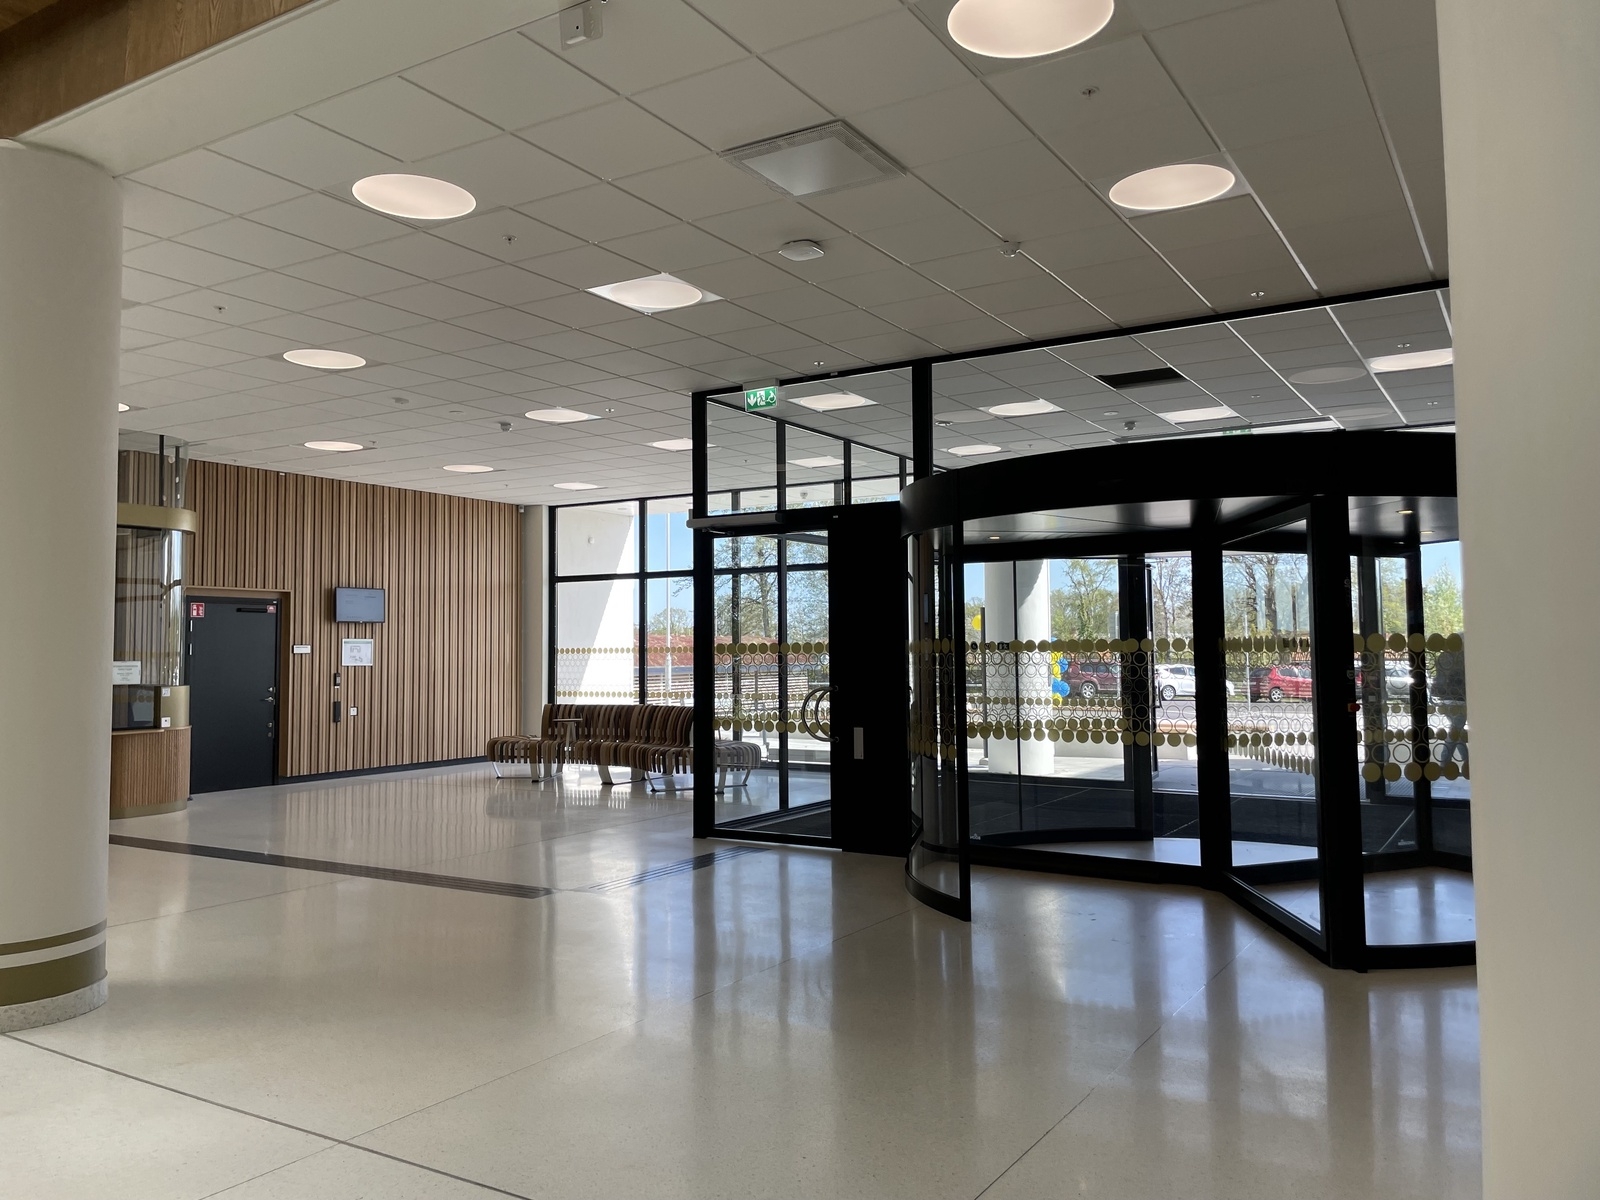 Invigning av nya psykiatrihuset i Kalmar den 12 maj 2022.